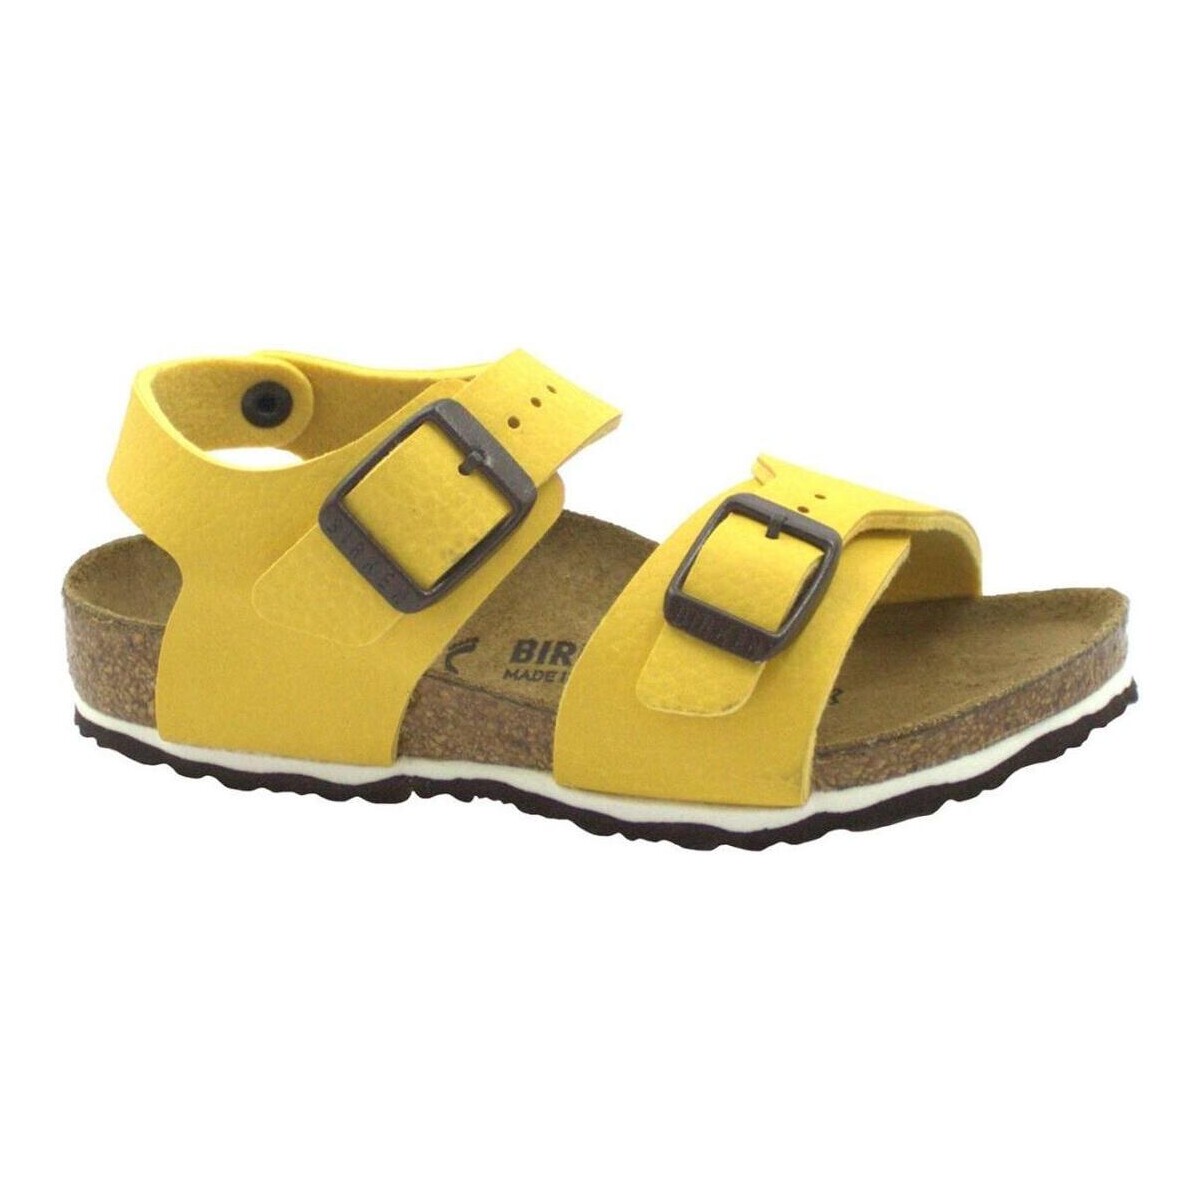 Schoenen Kinderen Sandalen / Open schoenen Birkenstock BIR-RRR-1015758-DSVC Geel